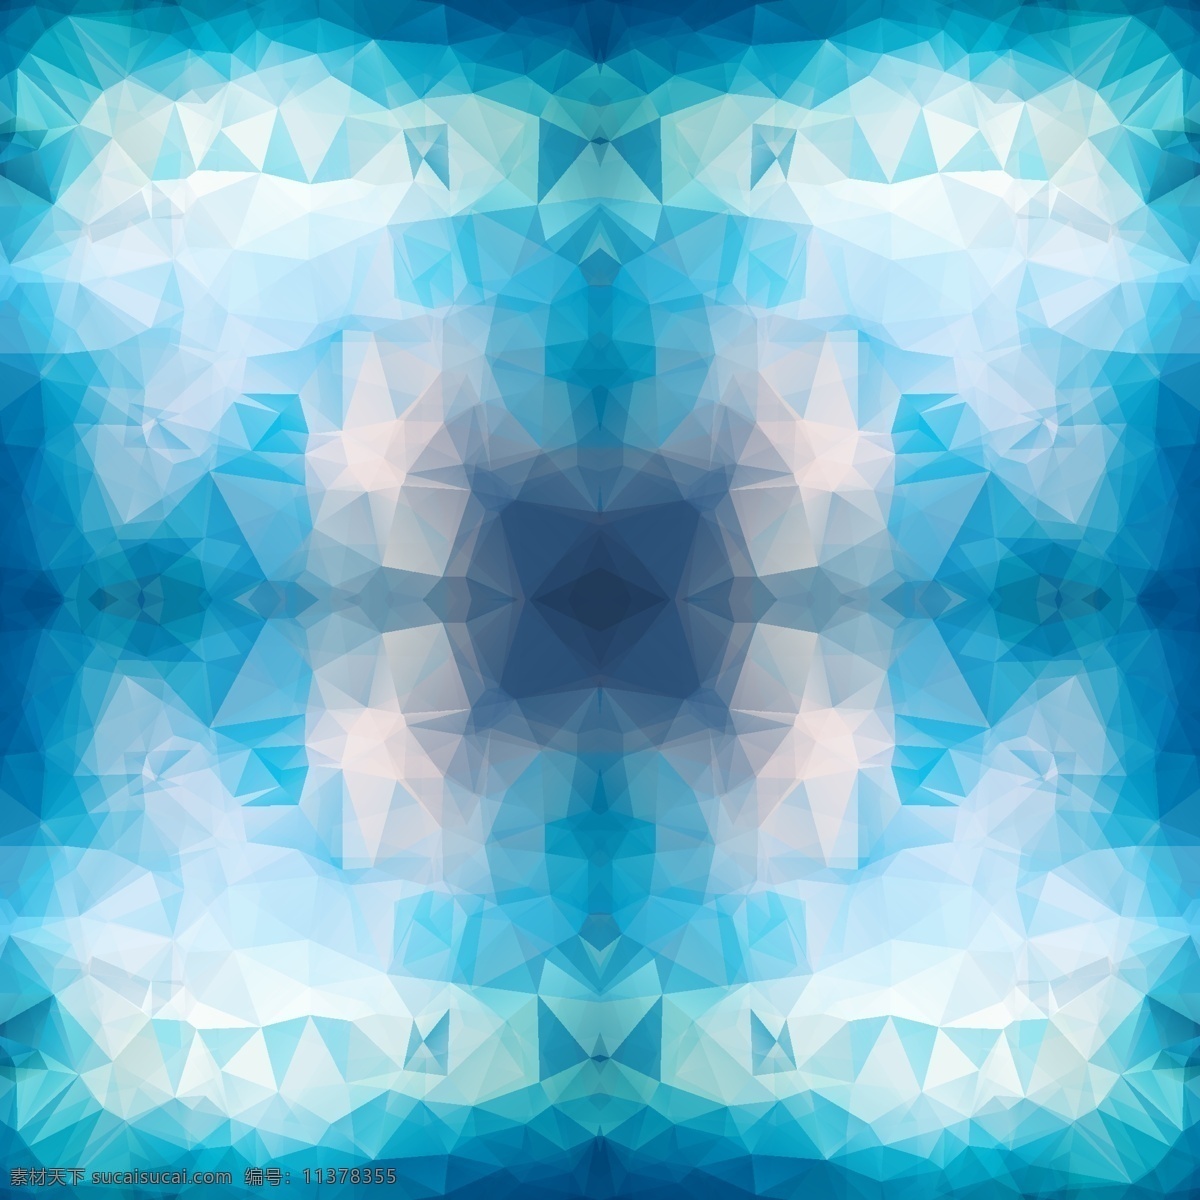 抽象 蓝色 图案 背景 矢量 晶体 银光 矢量素材 青色 天蓝色